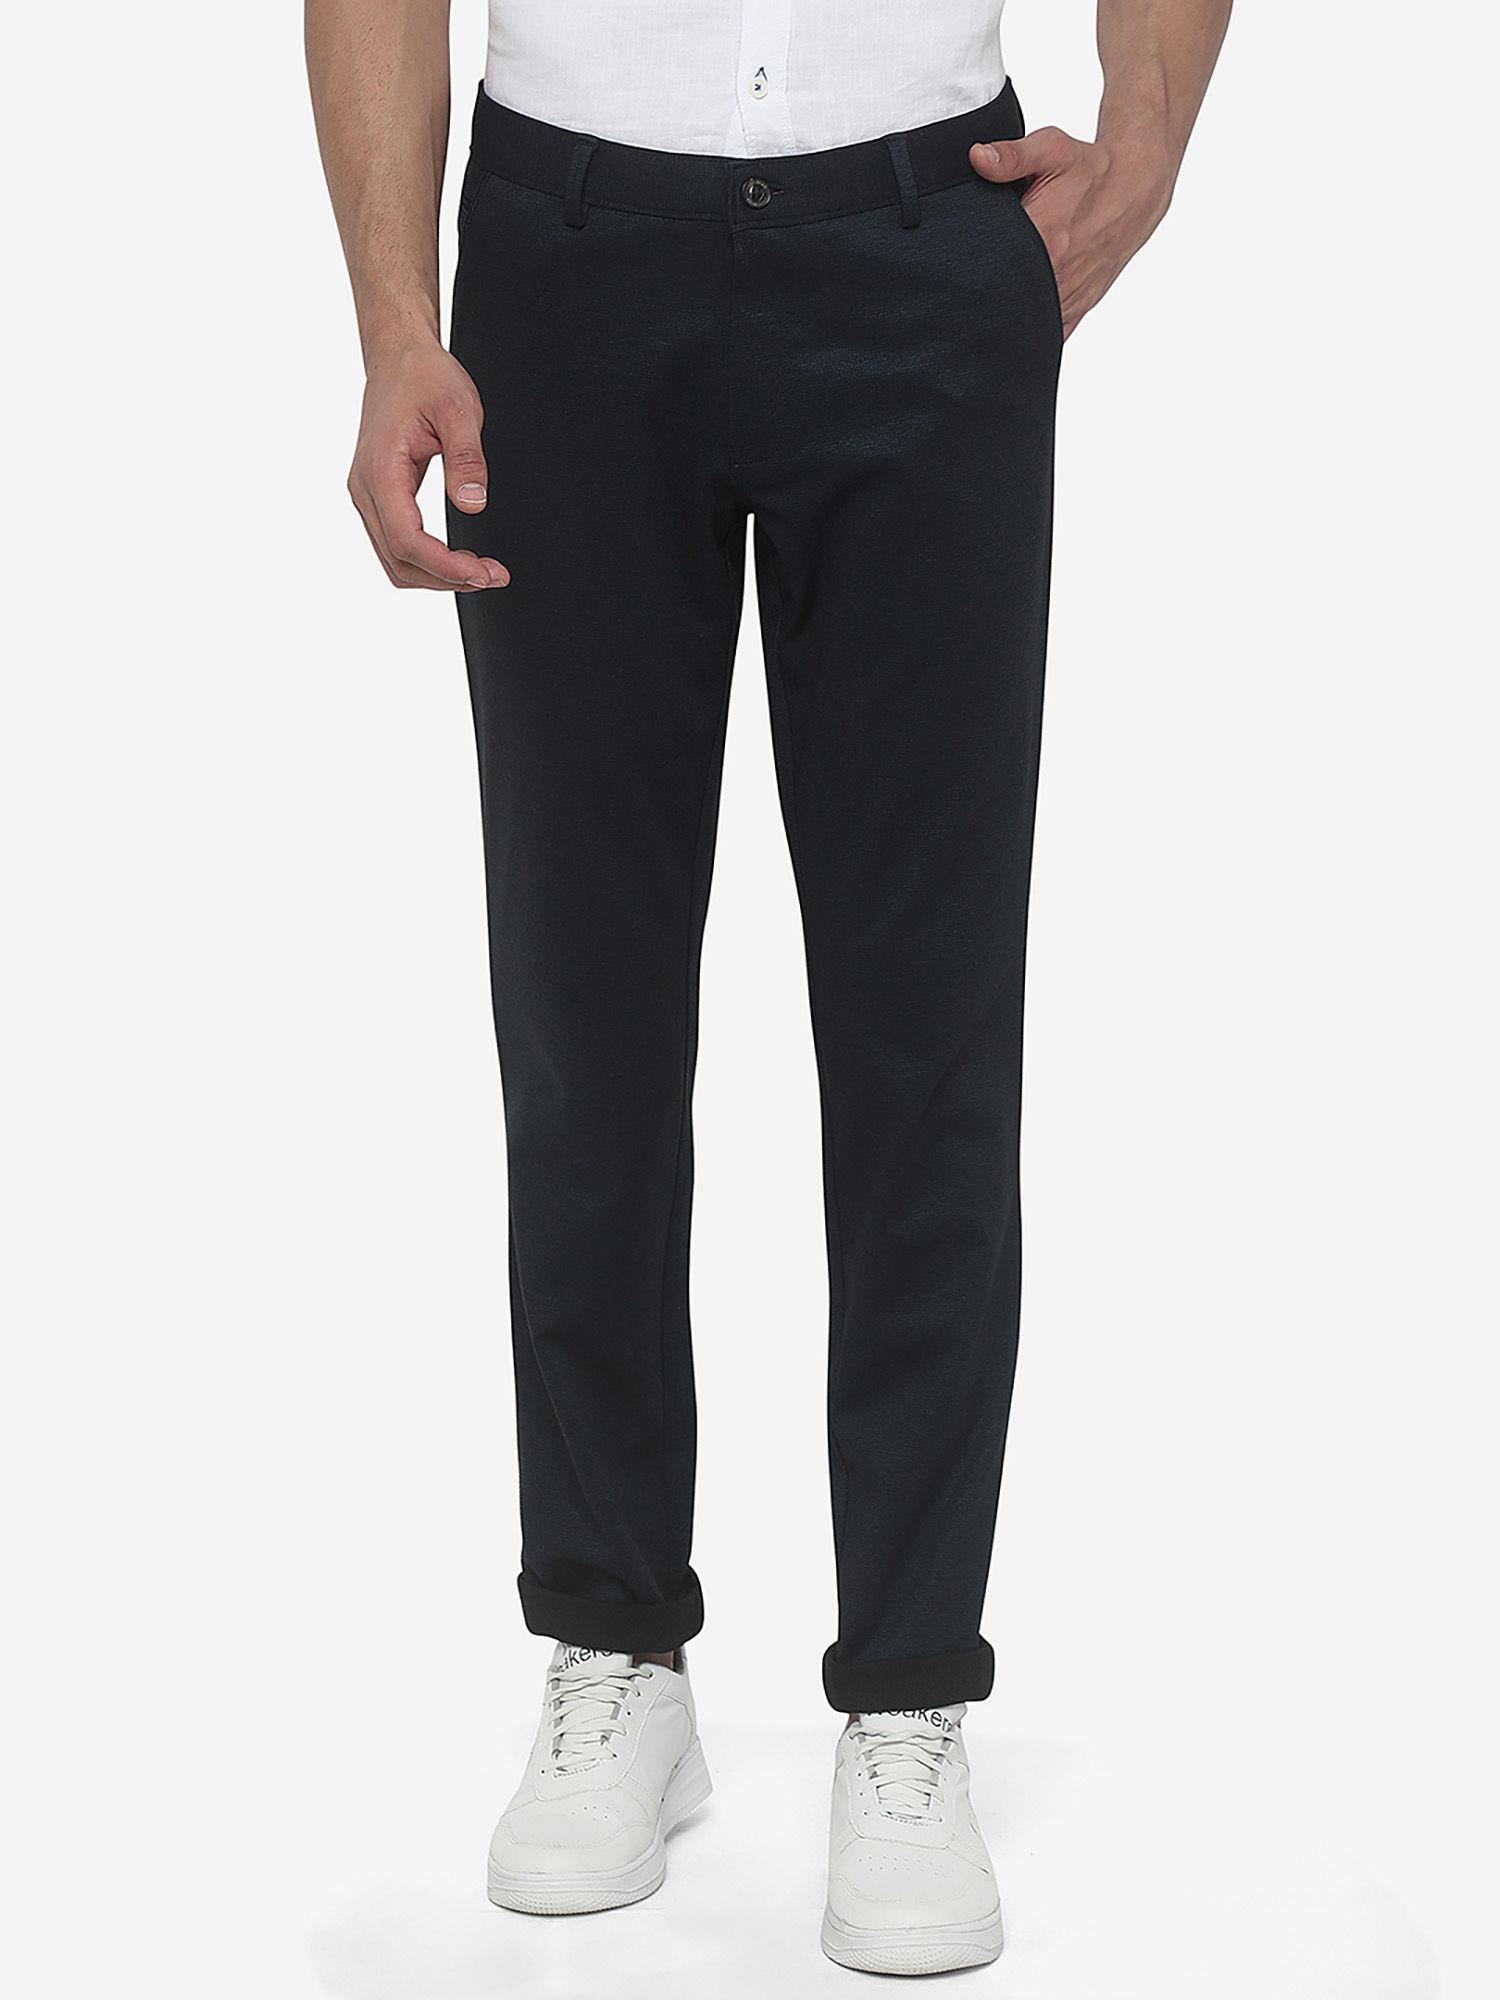 men's-solid-navy-blue-cotton-blend-slim-fit-formal-trouser